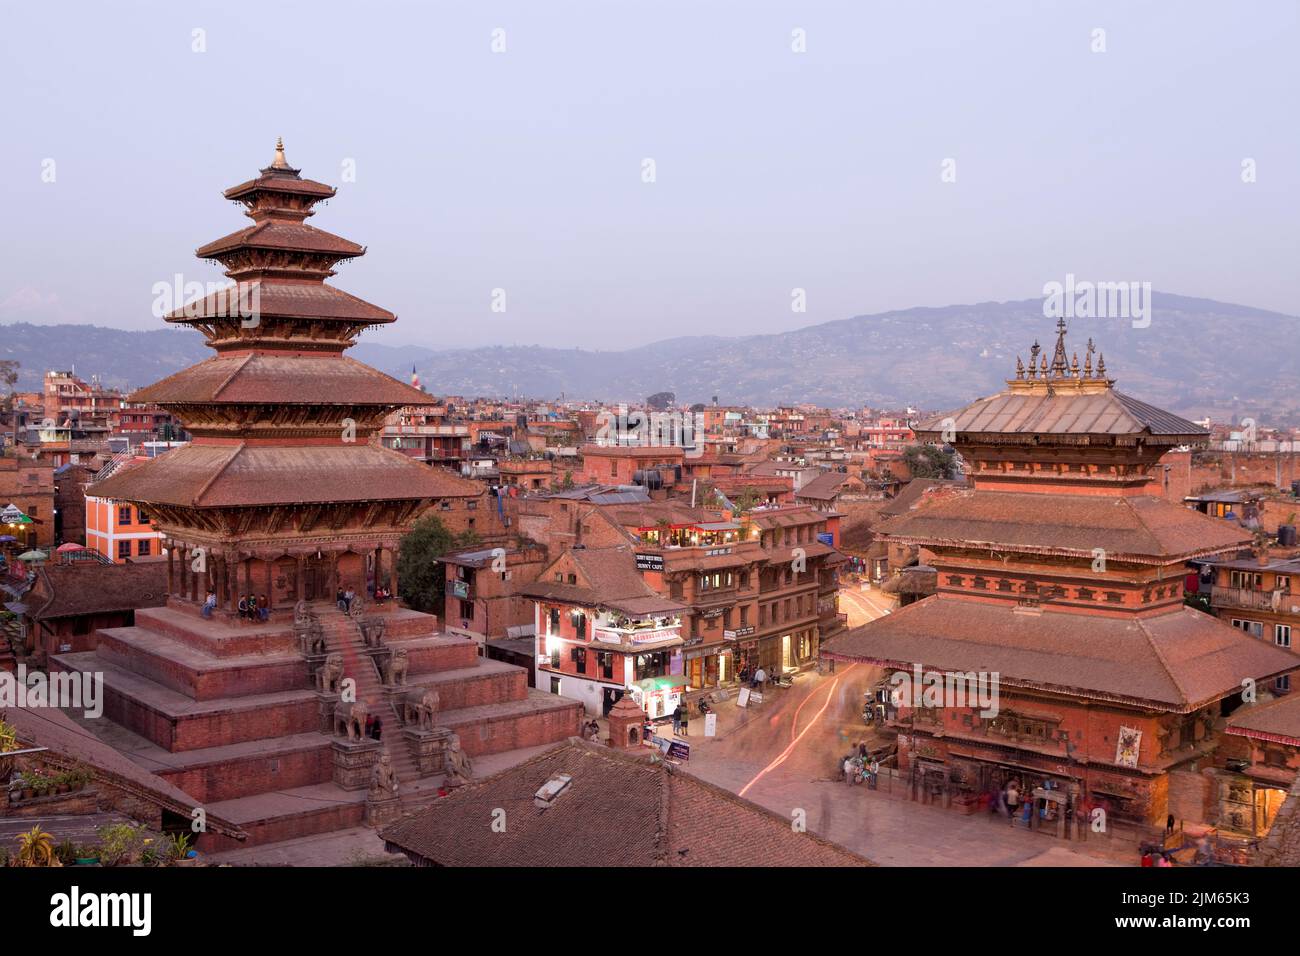 Bhaktapur, Nepal - 28 de octubre de 2012: Nyatapola Temple es una pagoda situada en la ciudad de Bhaktapur, Nepal. El templo es declarado Patrimonio de la Humanidad por la UNESCO. Foto de stock